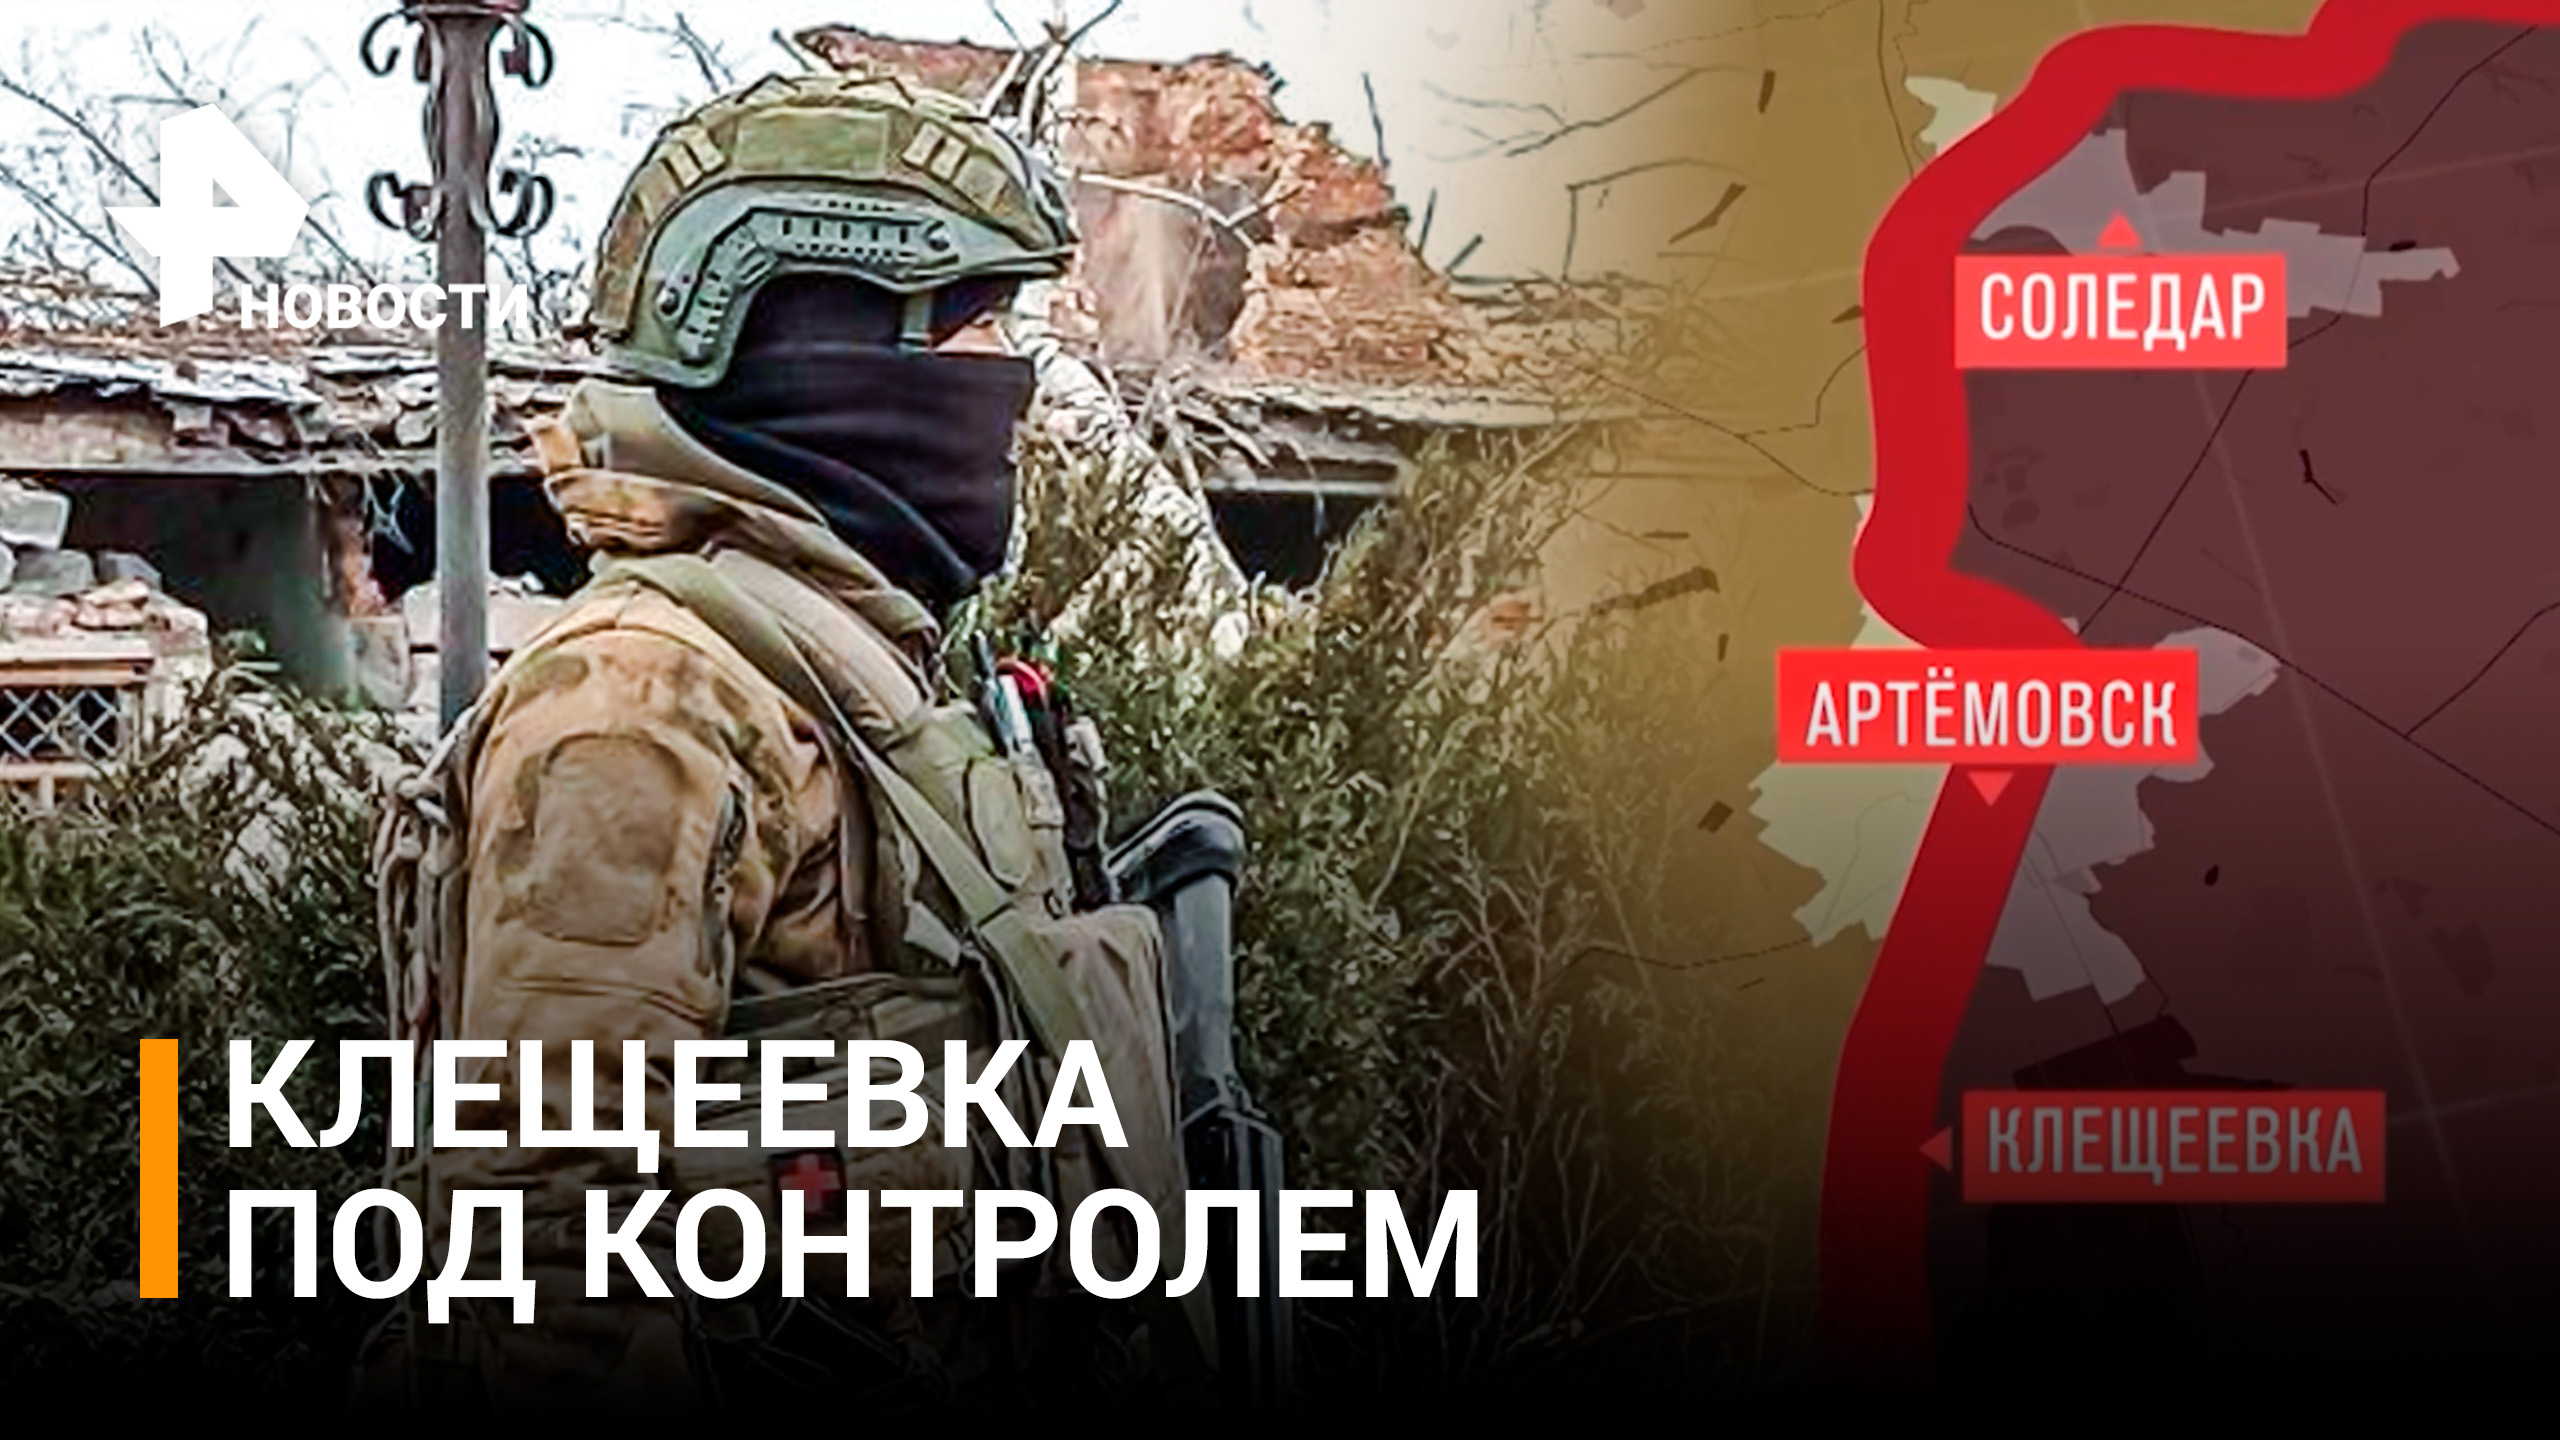 Российские силы взяли под контроль Клещеевку в районе Артемовска / РЕН Новости